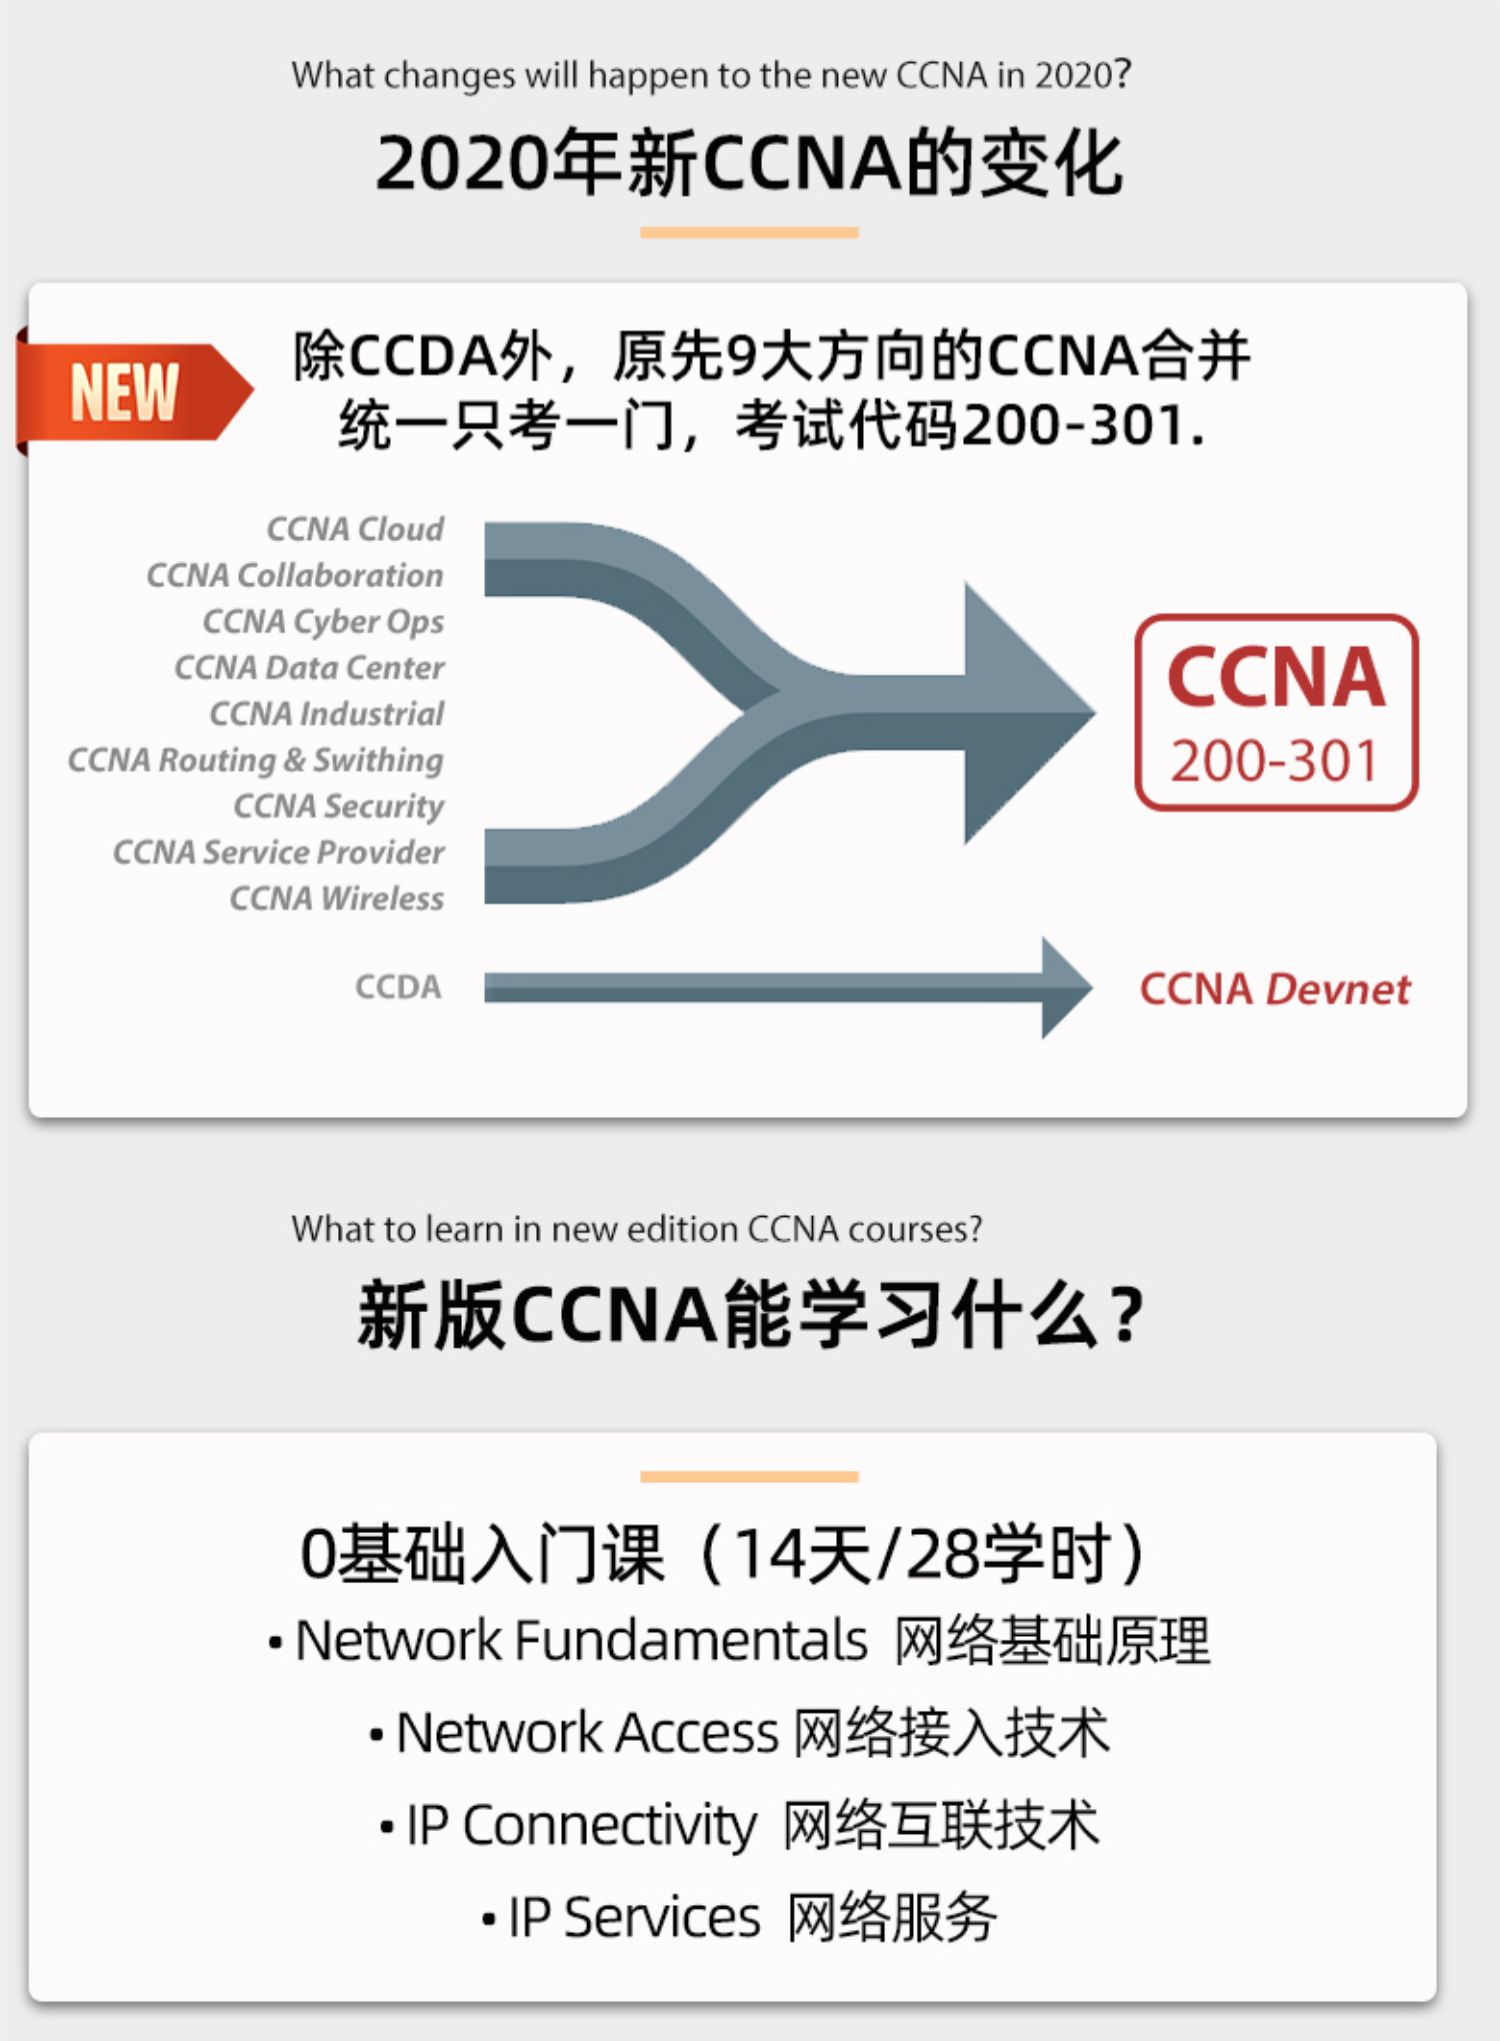 新版CCNA能学习什么